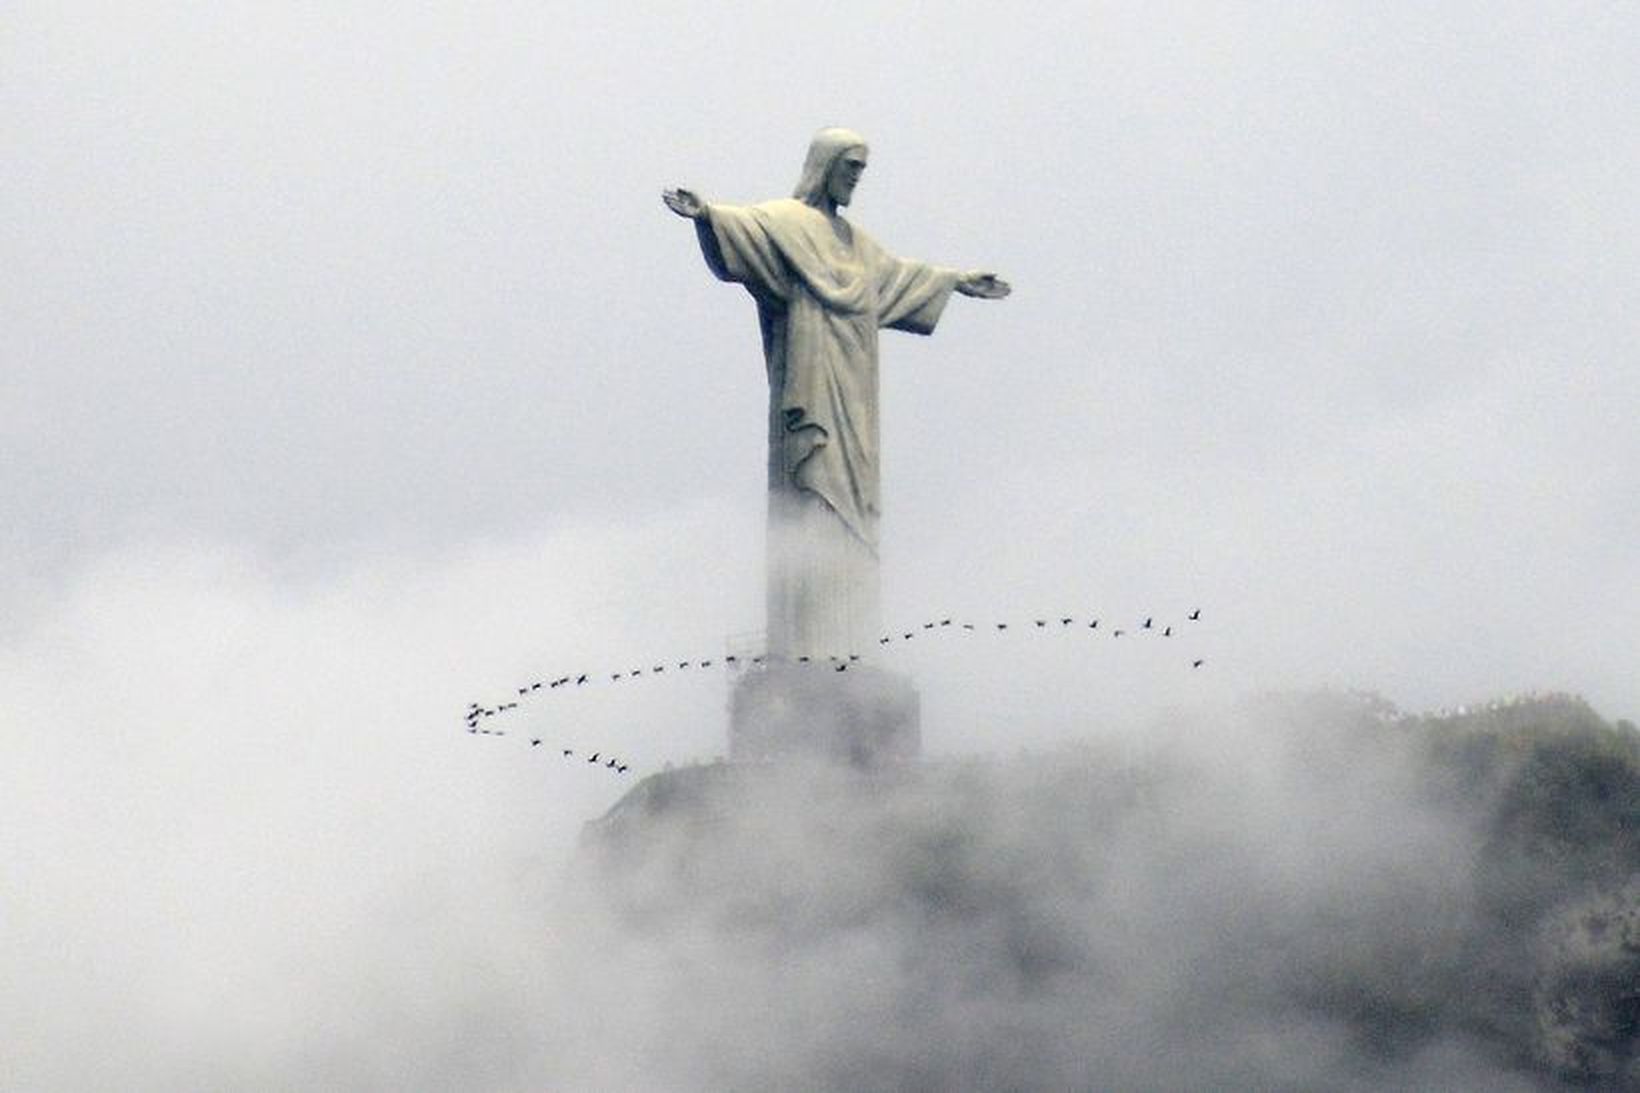 Verðlaunin voru veitt í Rio de Janeiro í gær.